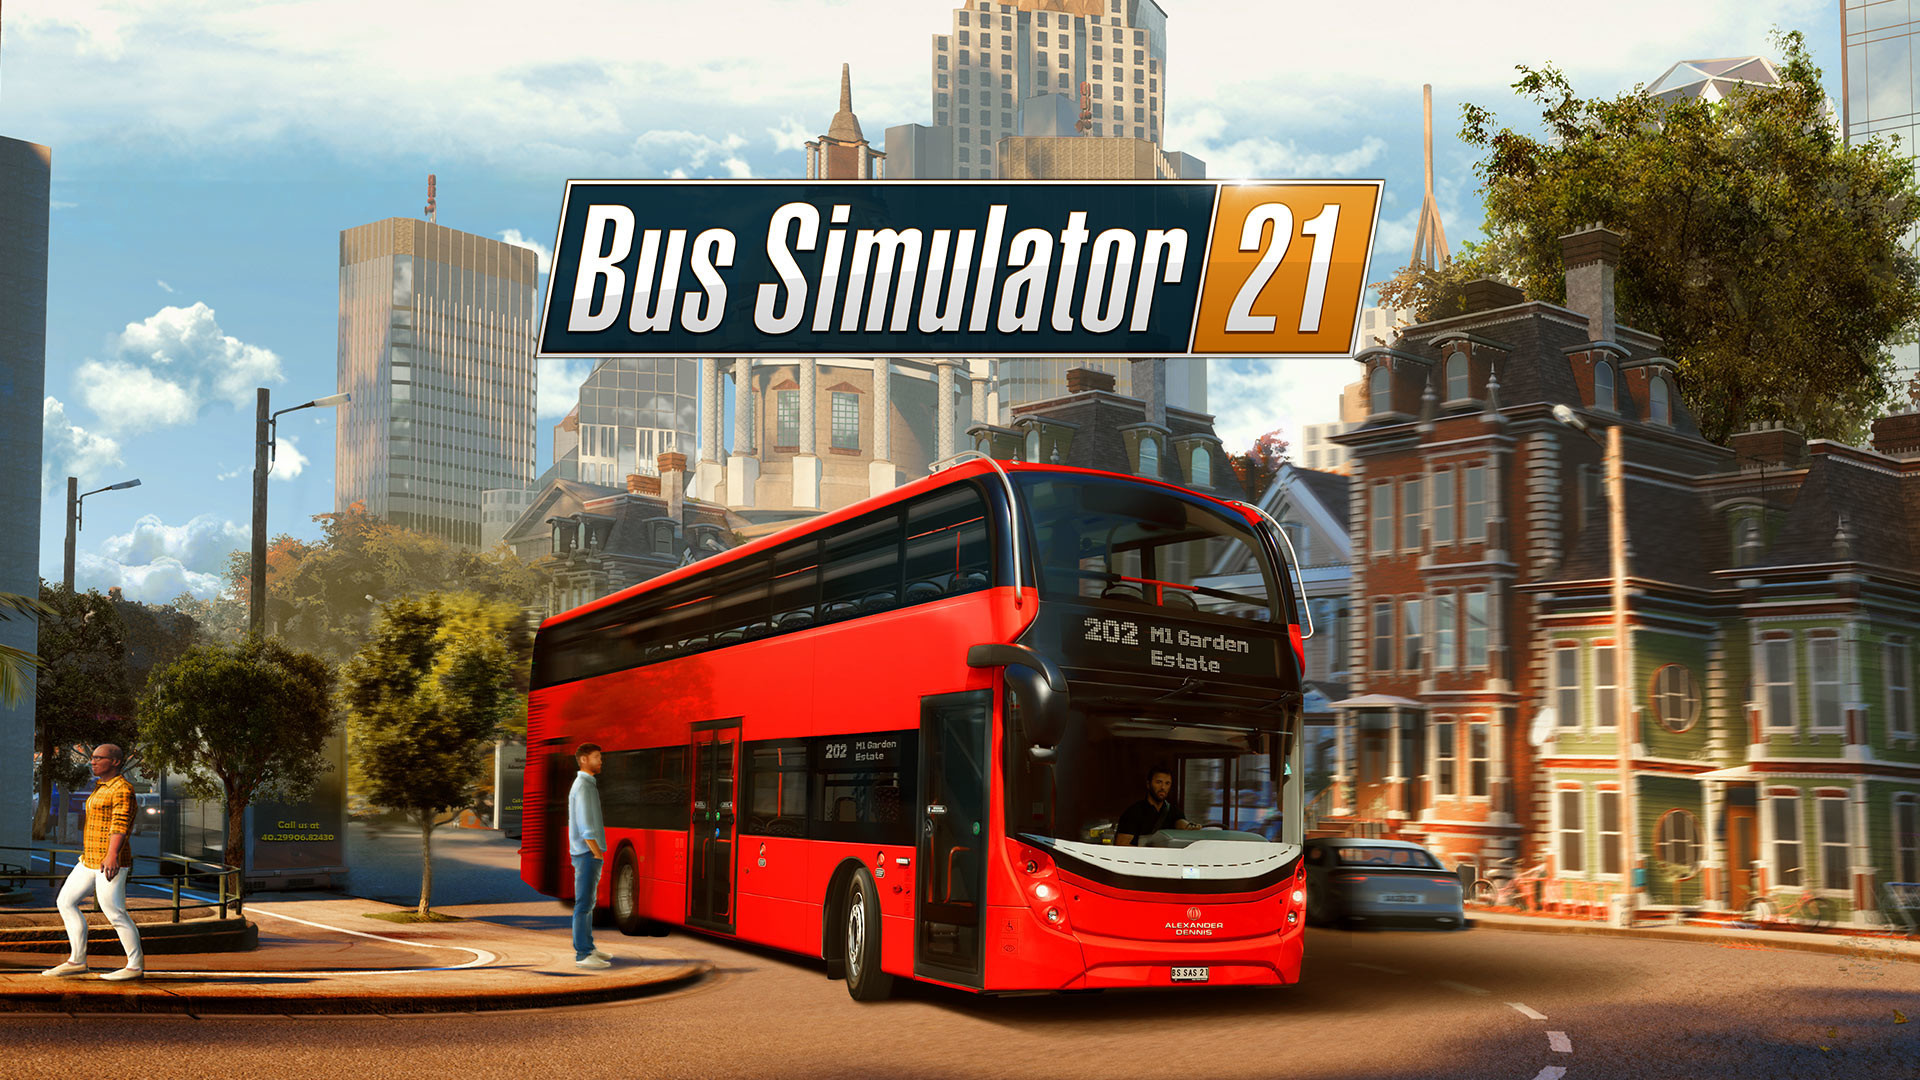 bus simulator 21 ps4 price